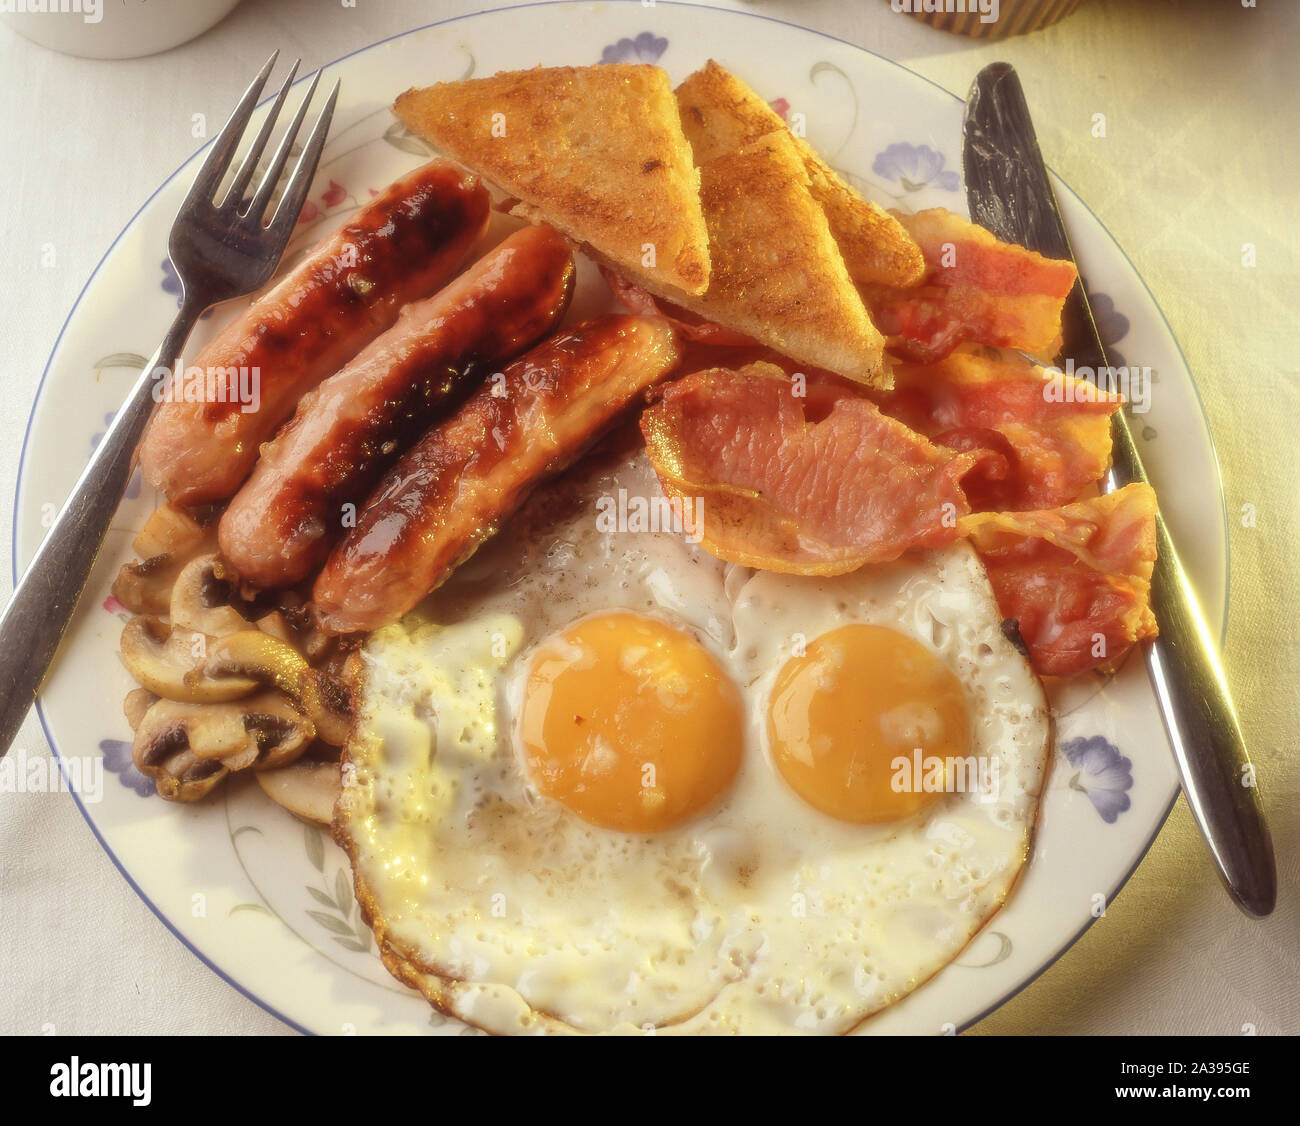 Le petit déjeuner anglais complet avec œufs frits, sauasages, bacon et pain frit, Berkshire, Angleterre, Royaume-Uni Banque D'Images